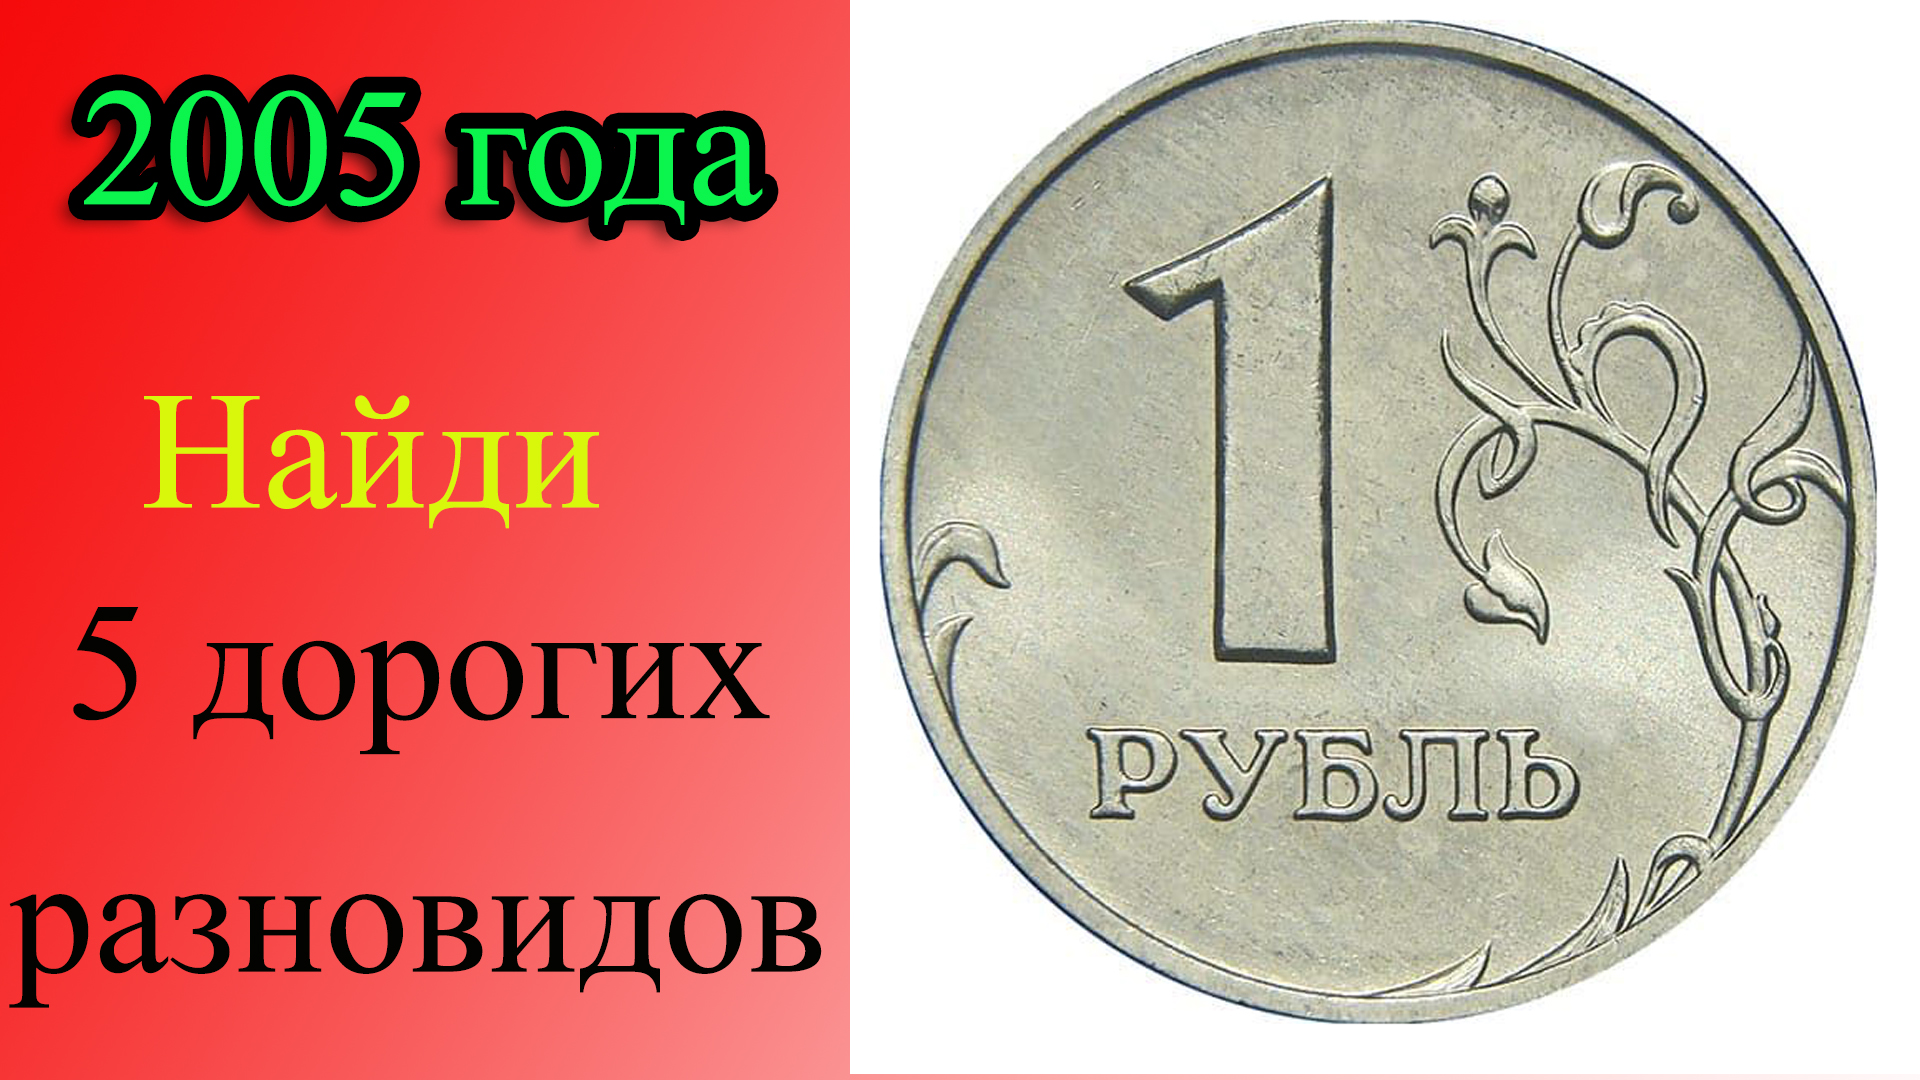 У этой монеты ПЯТЬ ДОРОГИХ разновидностей. Как распознать дорогие разновидности 1 рубля 2005 года.